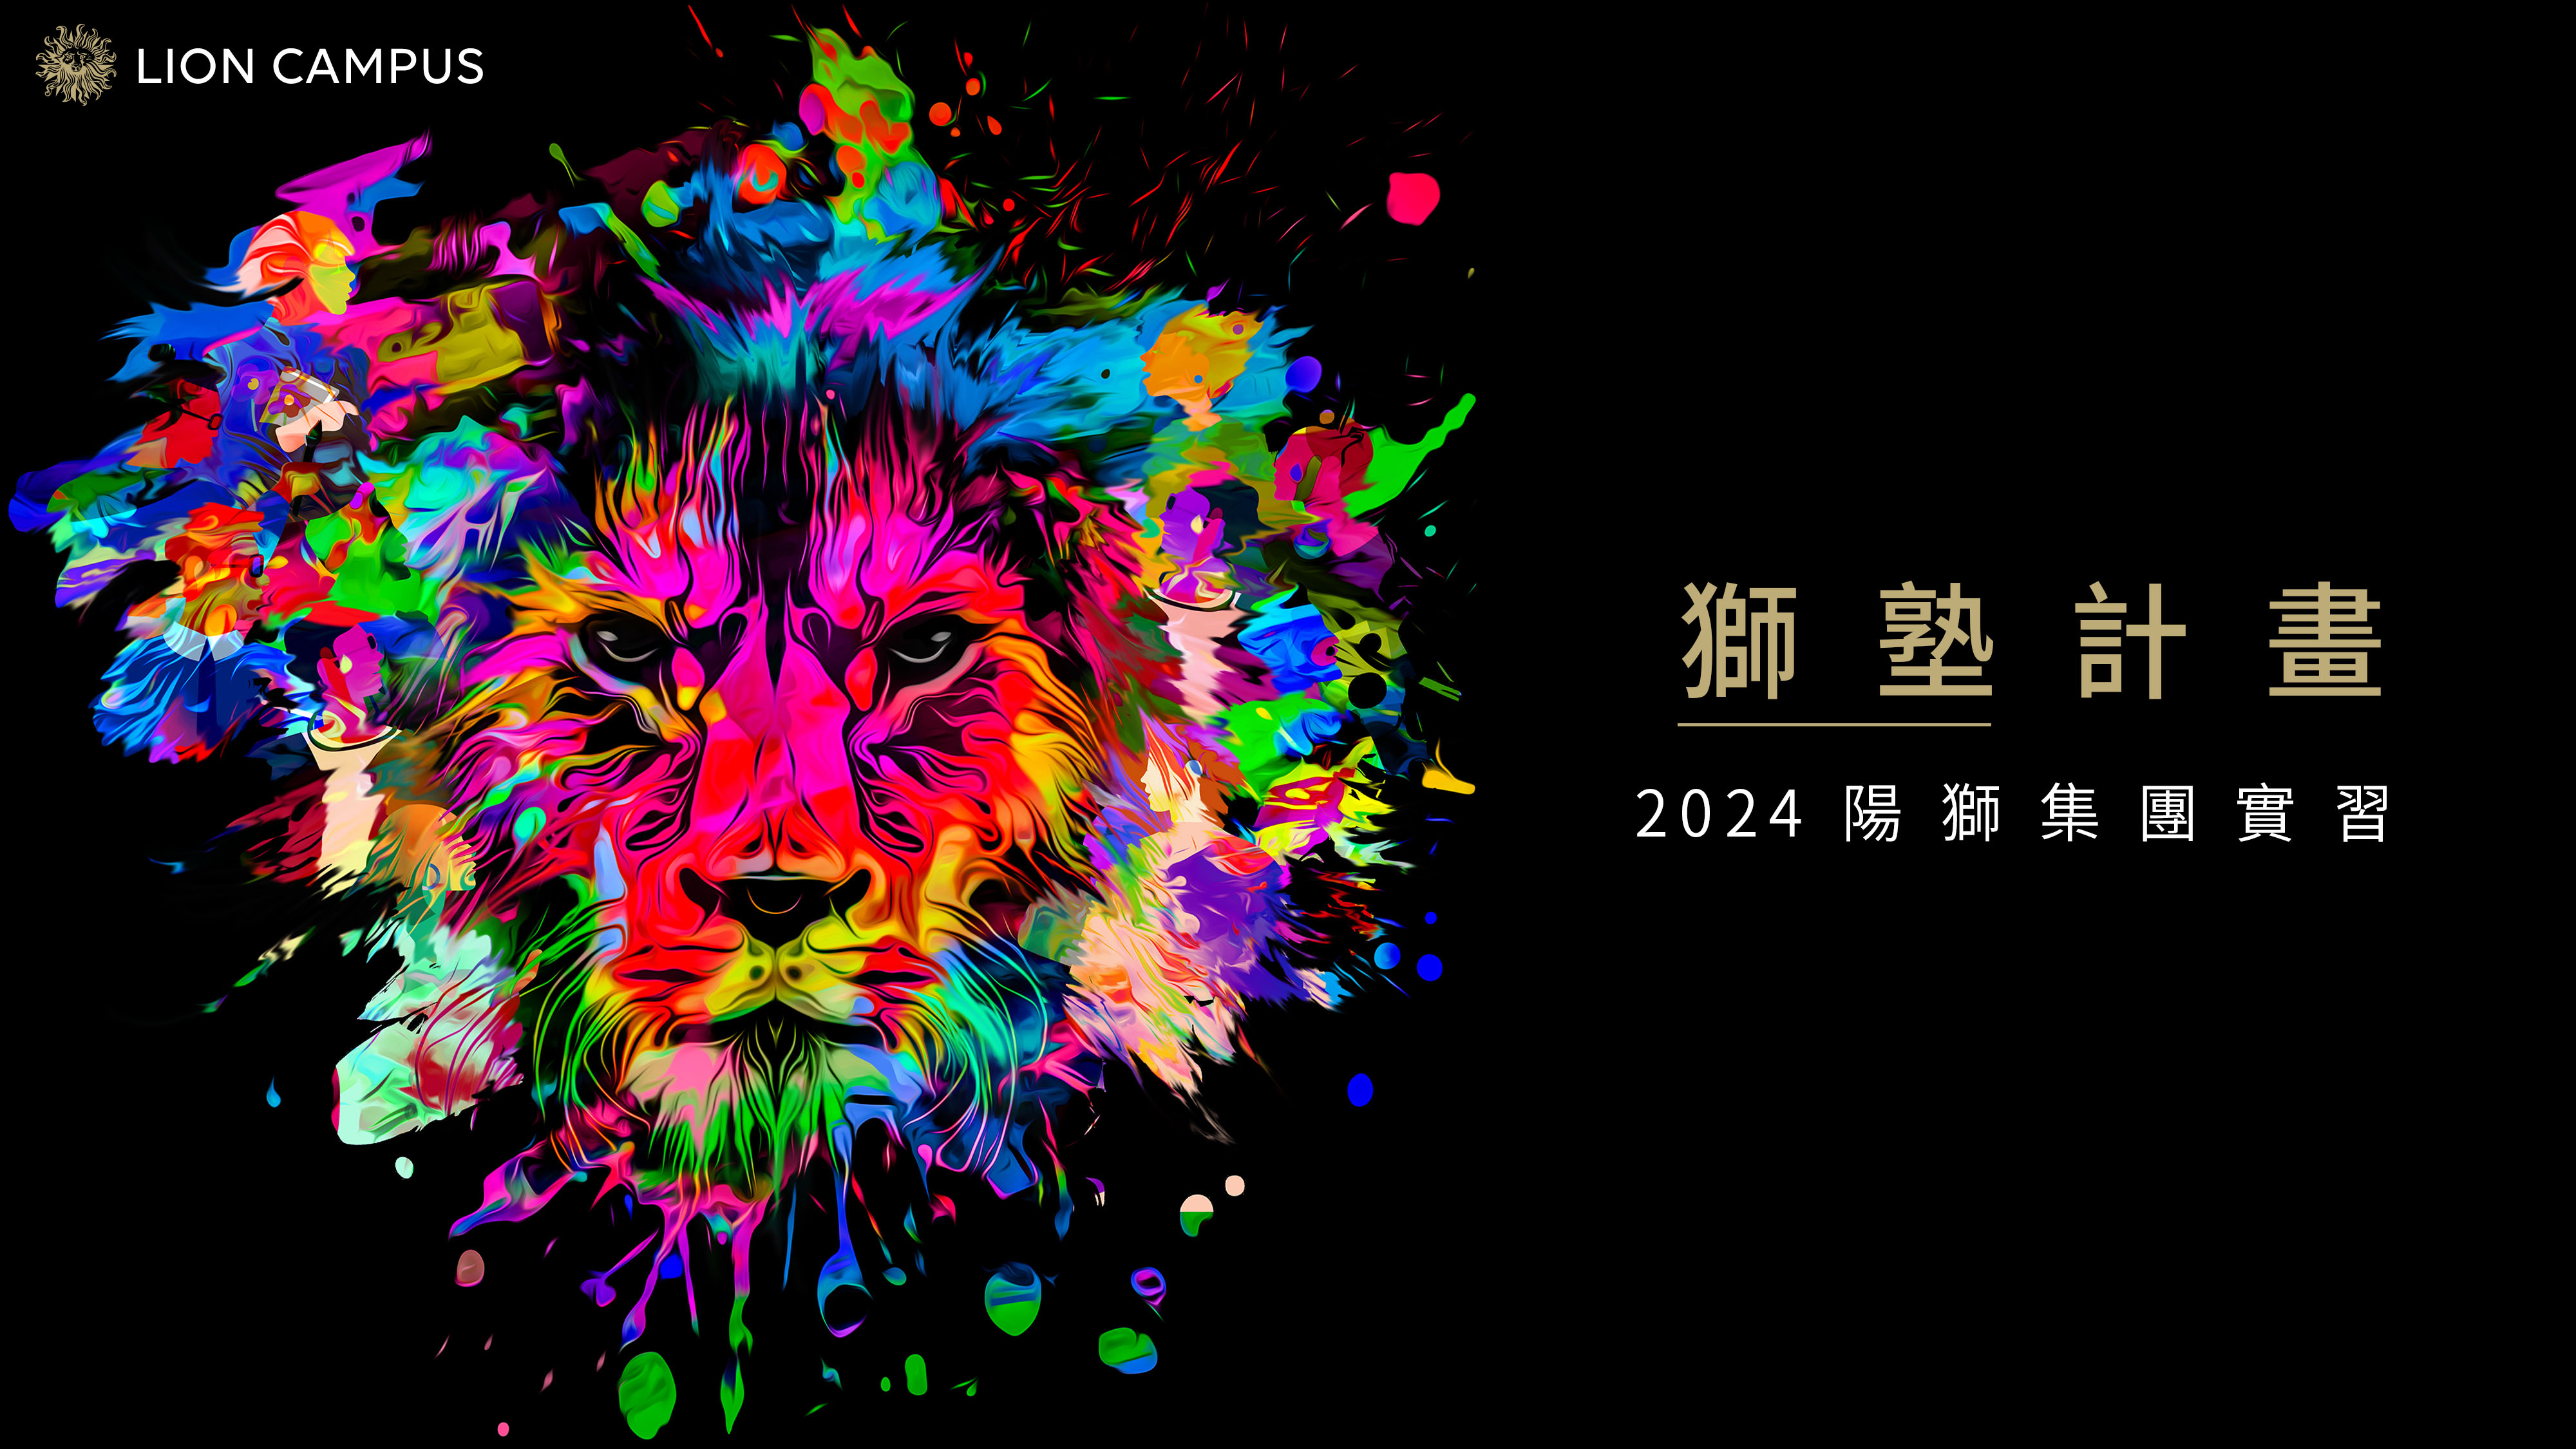 2024_Lion_Campus_主視覺_Banner.jpg